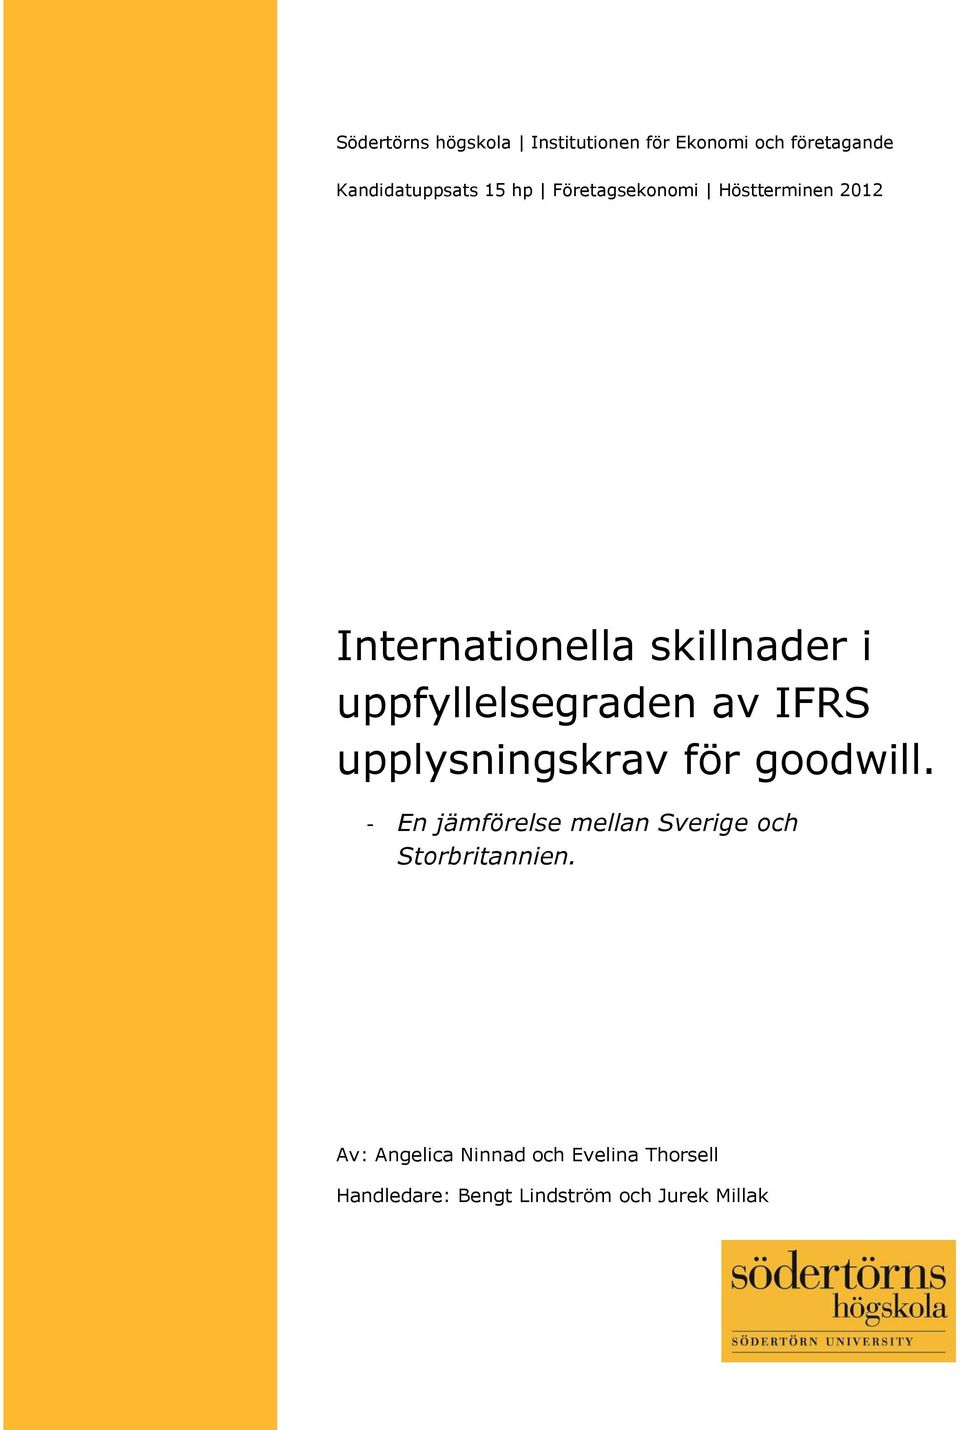 IFRS upplysningskrav för goodwill. - En jämförelse mellan Sverige och Storbritannien.